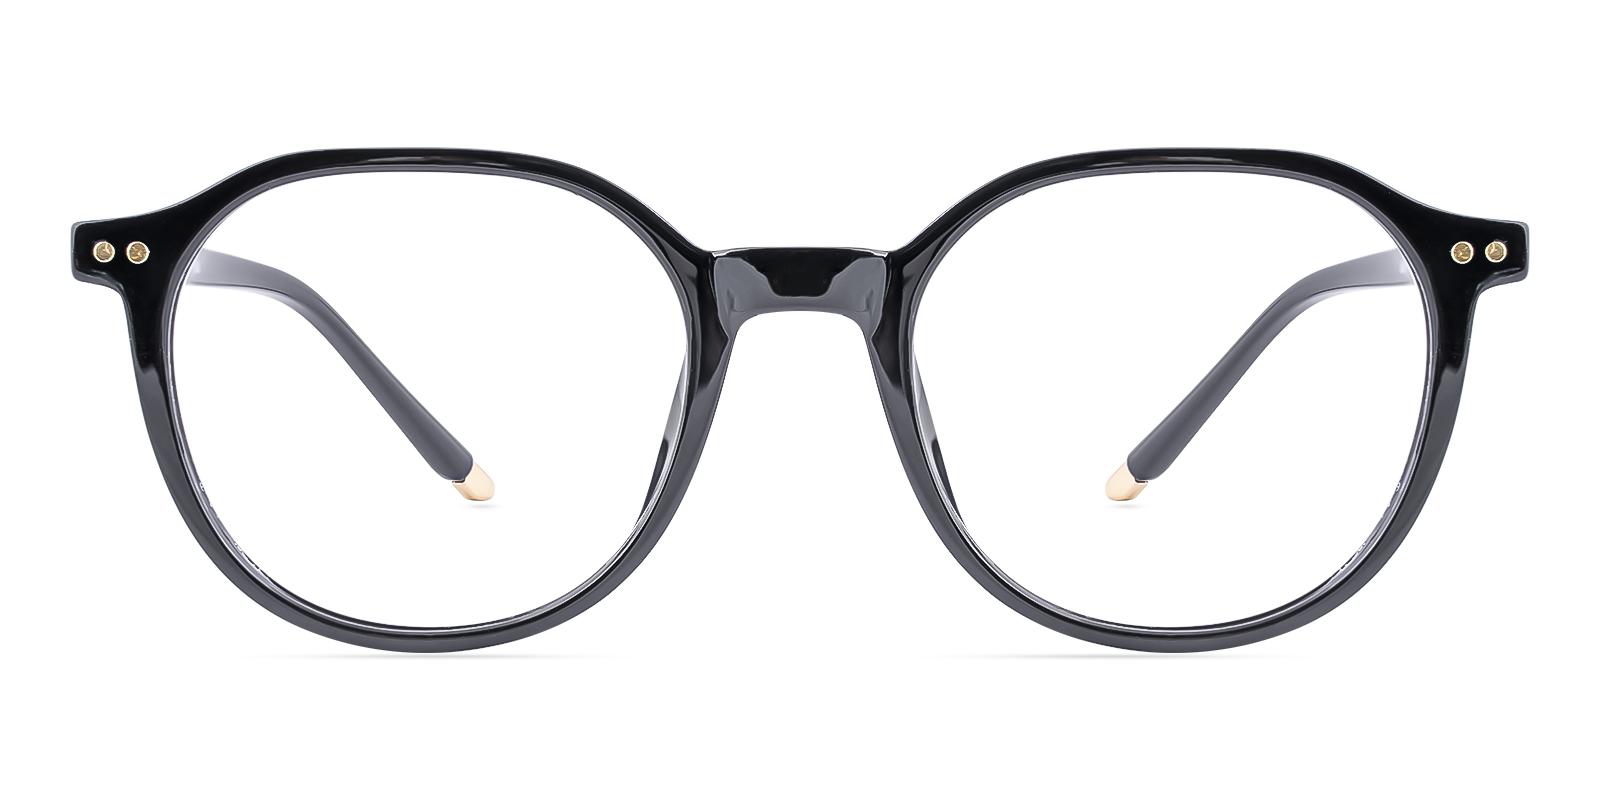 Restlike Black Plastic Eyeglasses , UniversalBridgeFit Frames from ABBE Glasses